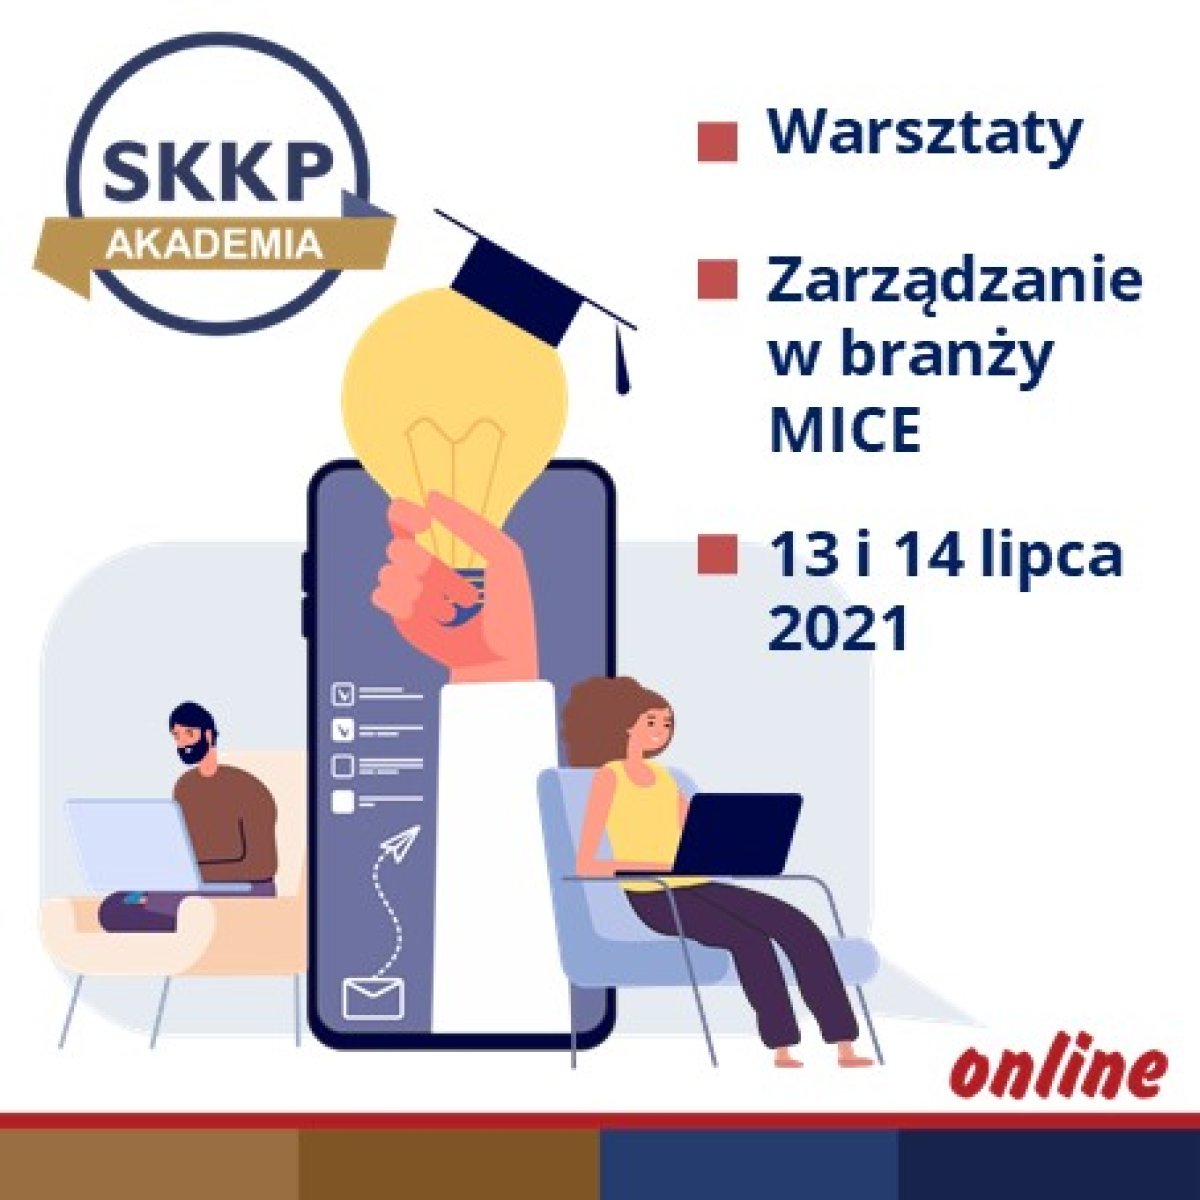 Pierwsze warsztaty Akademii SKKP online już 13 i 14 lipca!